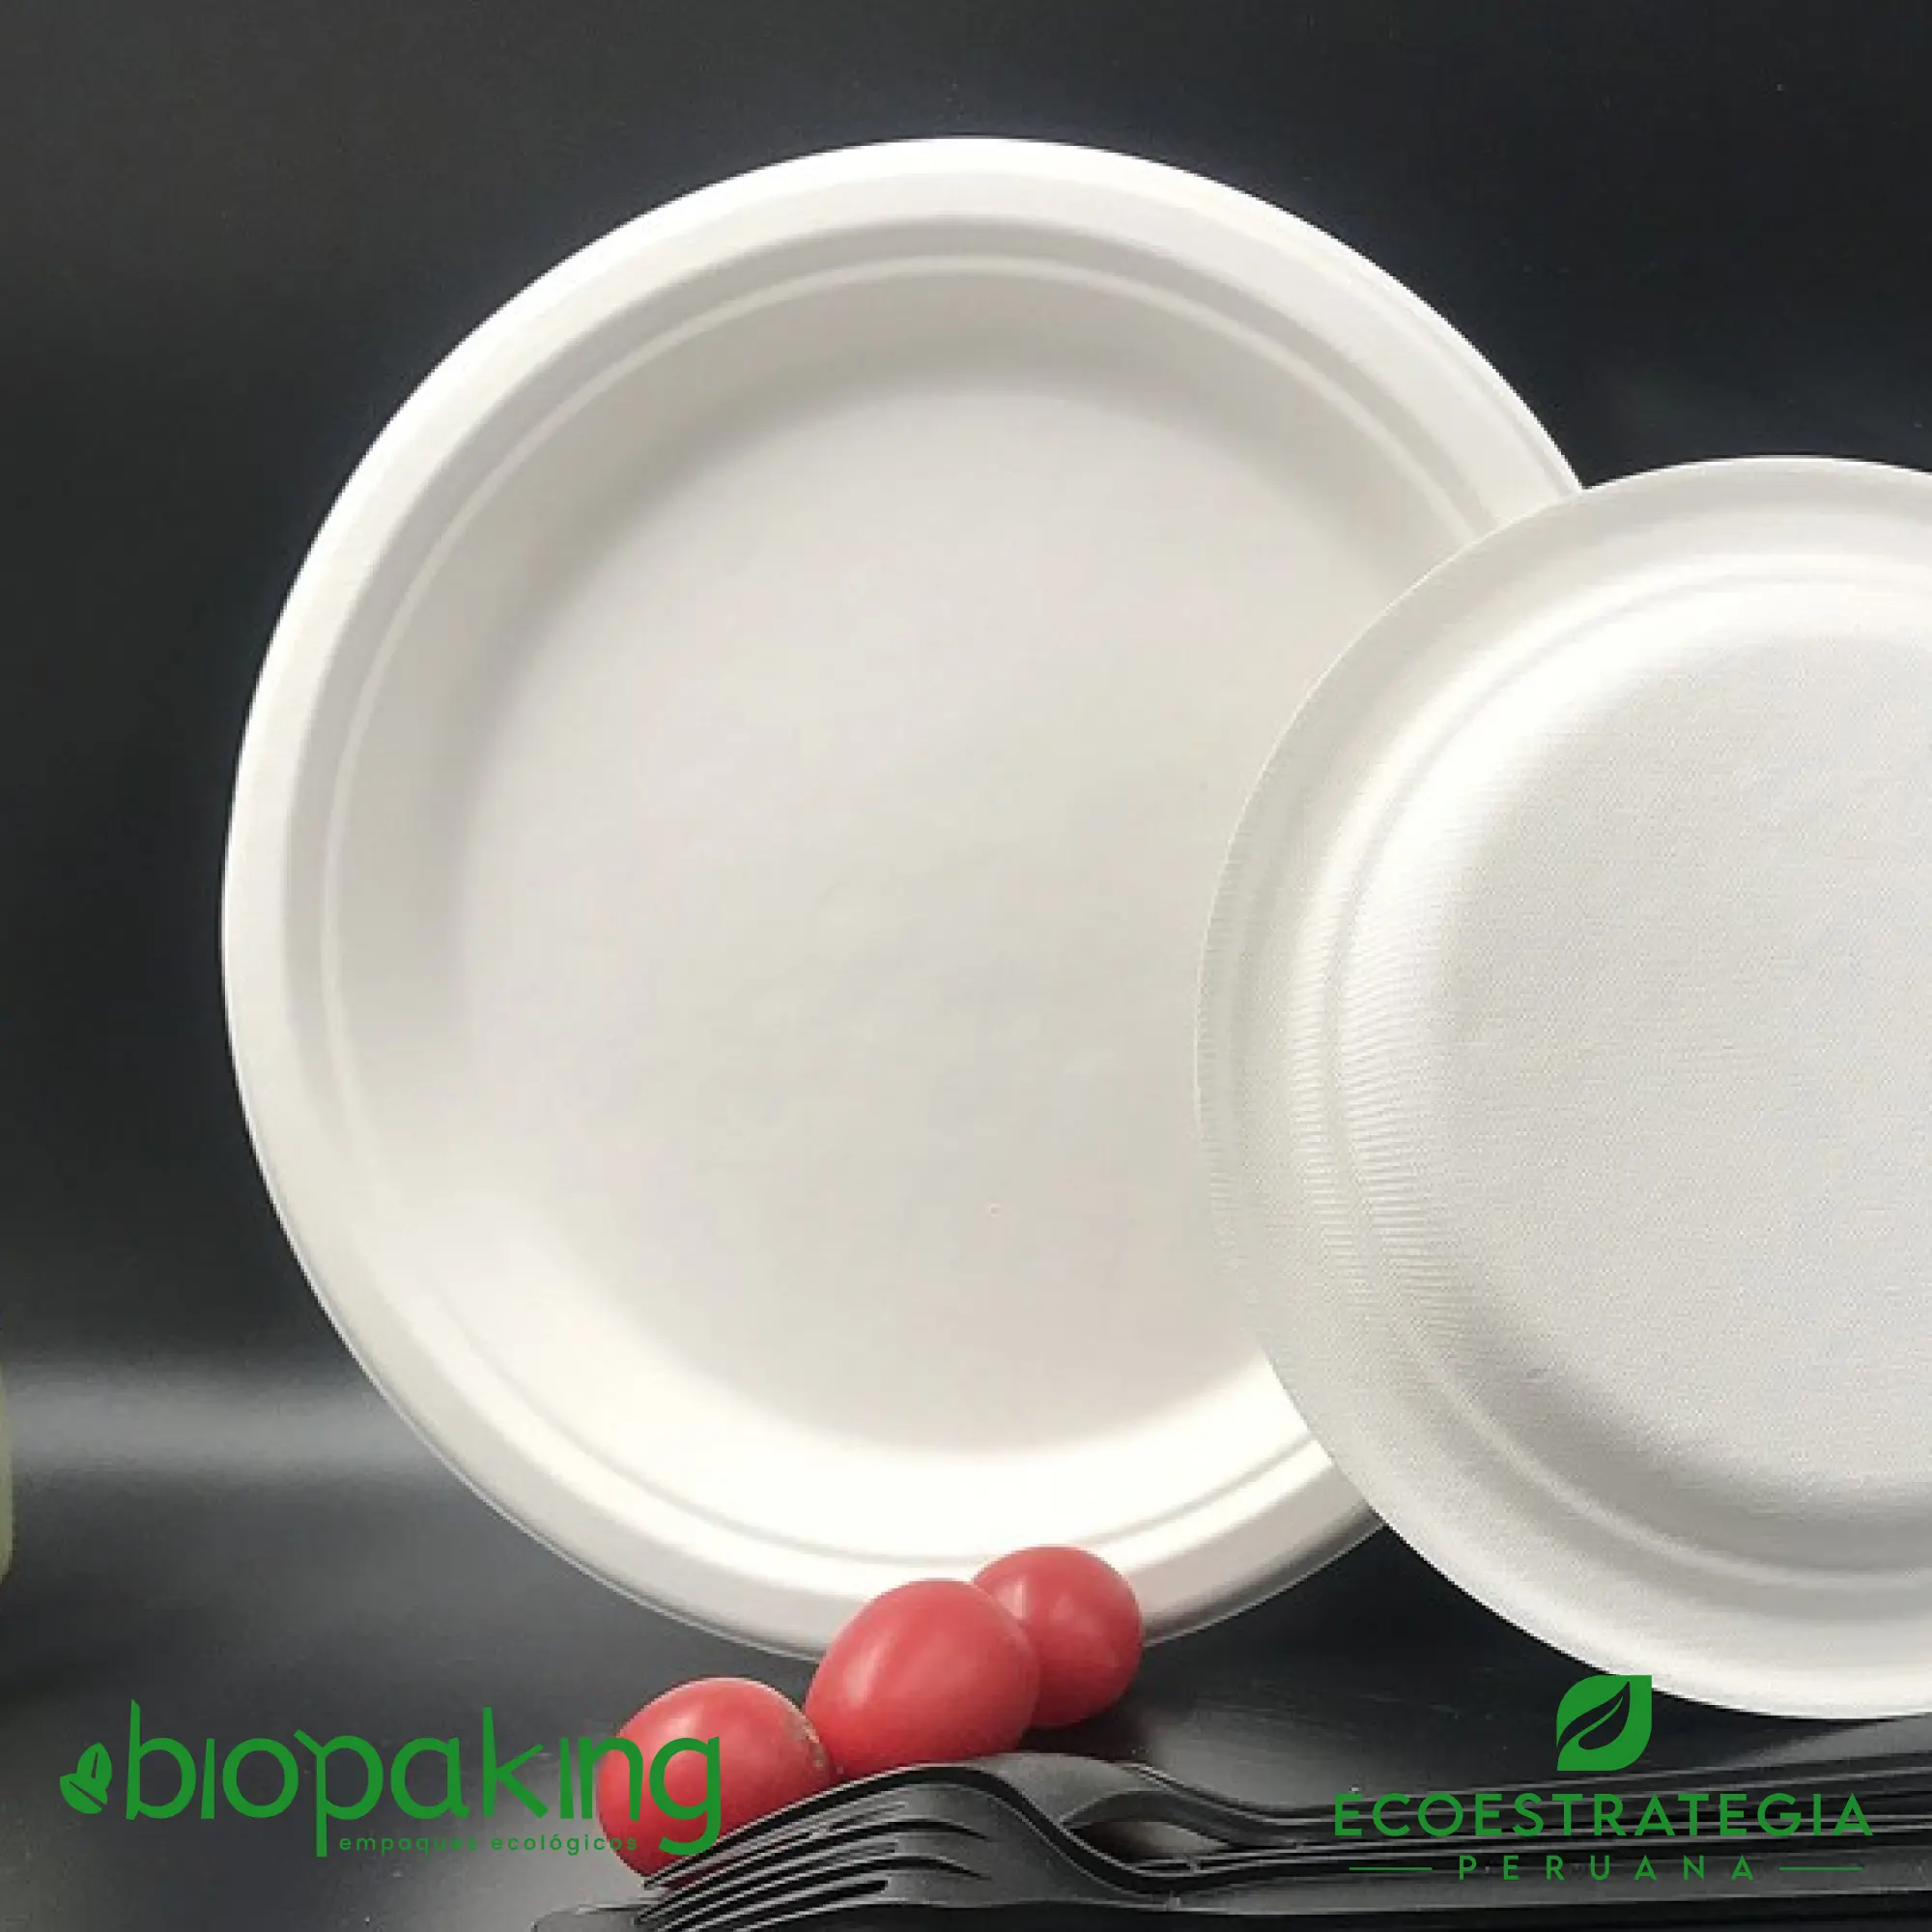 Este plato de 22 cm, es un producto de materiales biodegradables, hecho a base de fibra de caña de azúcar. Cotiza envases, empaques y tapers bio para comidas